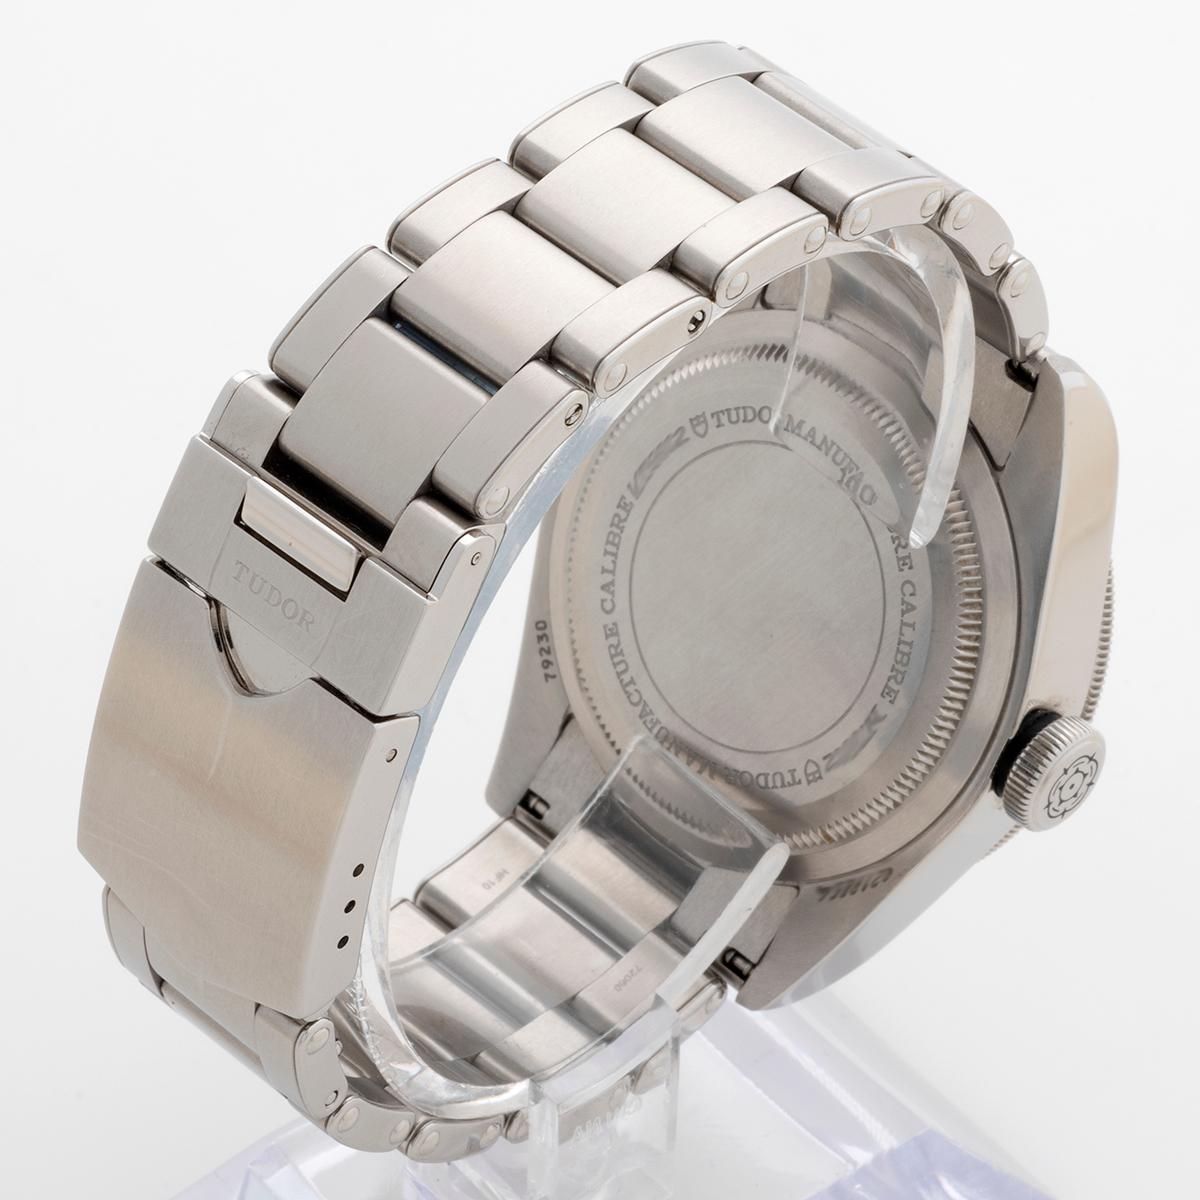 Tudor Black Bay Ref 79230N Wristwatch, 41mm Case, Full Set, Year 2021. 1